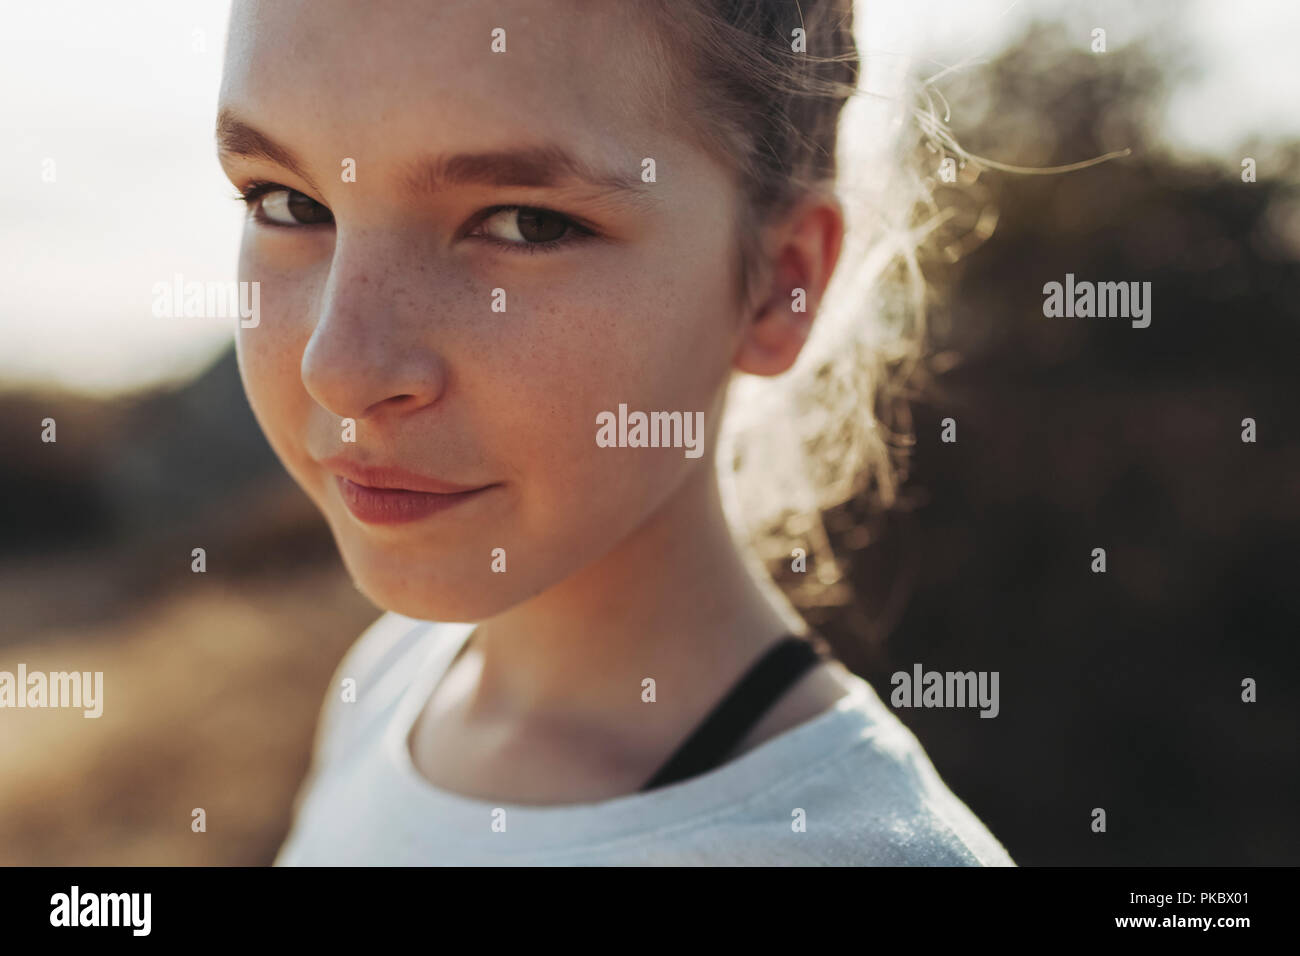 Nahaufnahme Porträt eines Jugendlichen Mädchens mit Sommersprossen; Los Angeles, Kalifornien, Vereinigte Staaten von Amerika Stockfoto